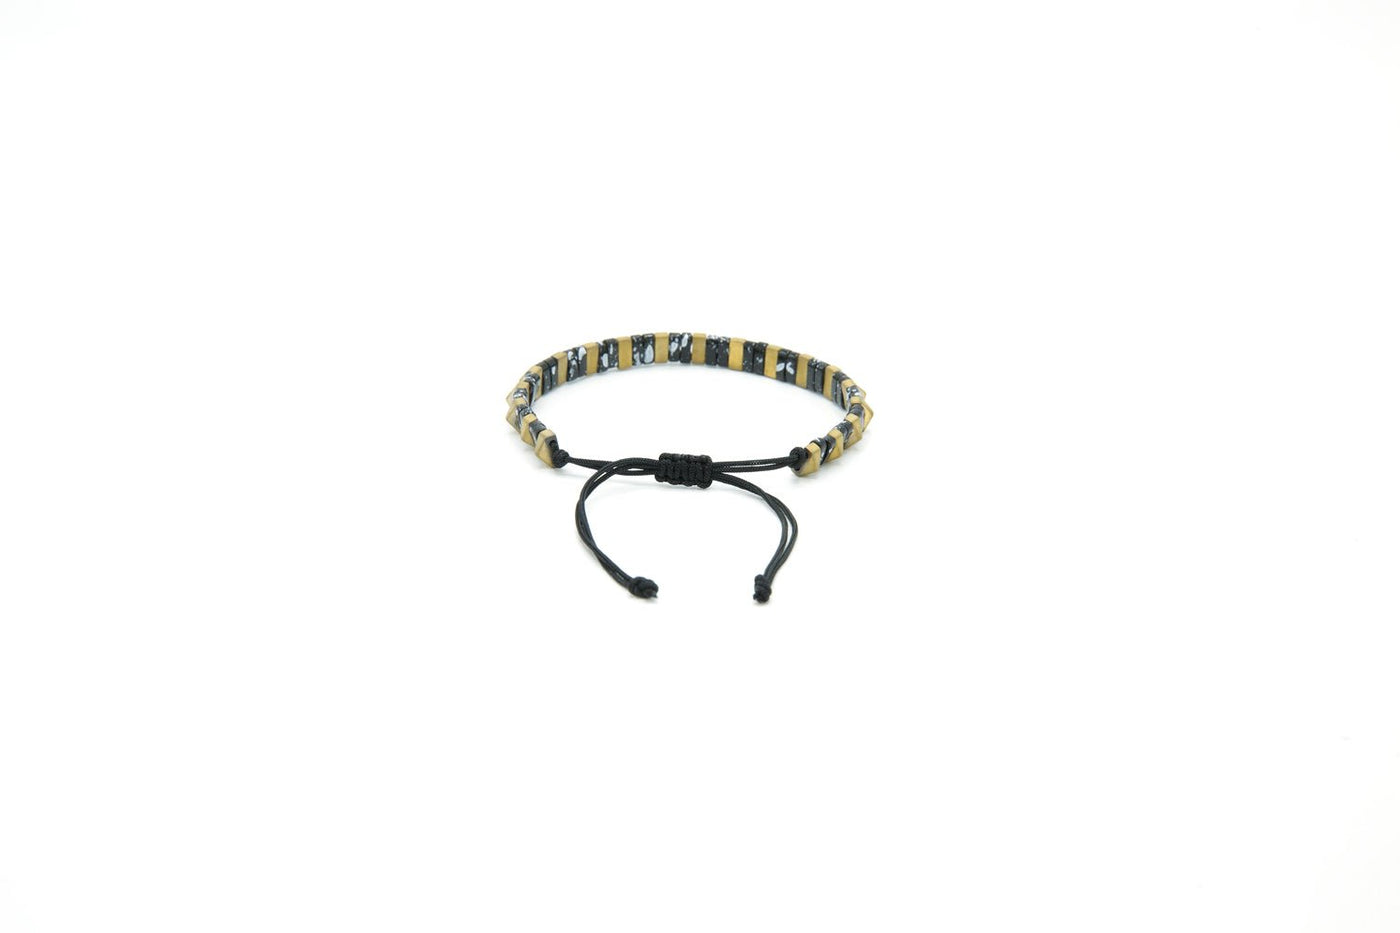 Men’s Natural Stone Beaded Bracelet, Set of 3 Bracelets with Gemstone Hematite Beaded Bracelet, Tiger Eye Bracelet, Leather Bracelet - Ozzell London